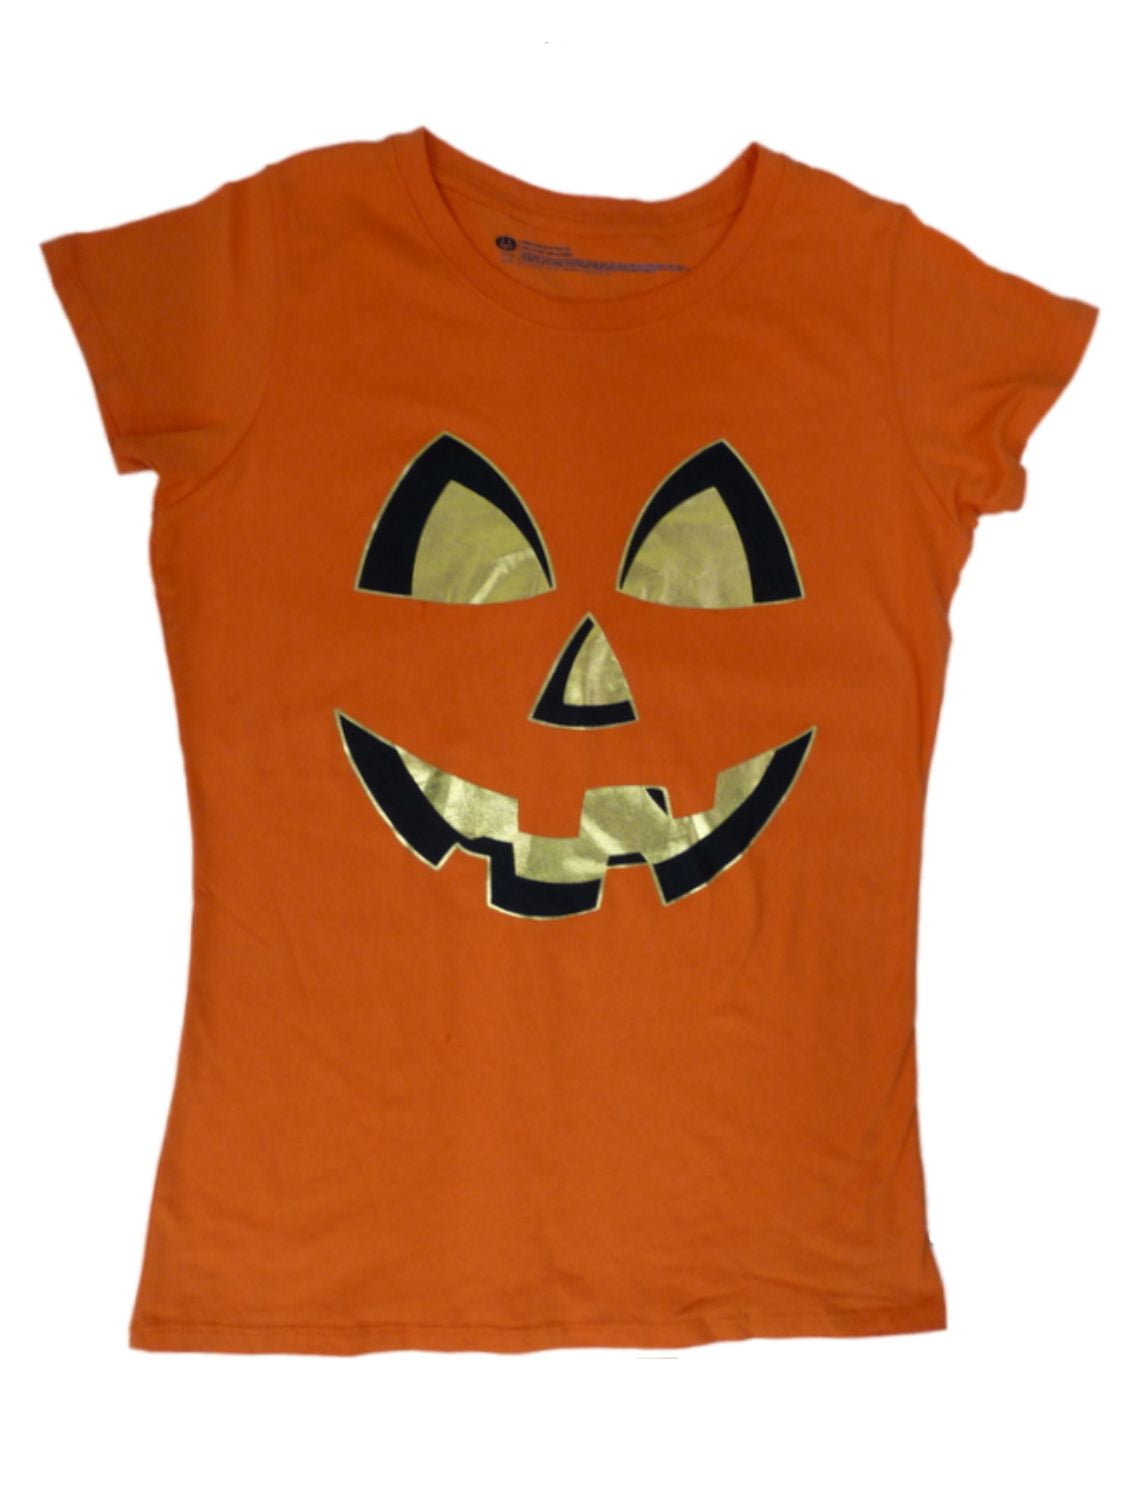 Women's Halloween Party Shirt Women's Jack-O-Lantern Shirt Women's Pumpkin Face Shirt Cute Pumpkin Shirt Women's Tee Adult Fall Tee